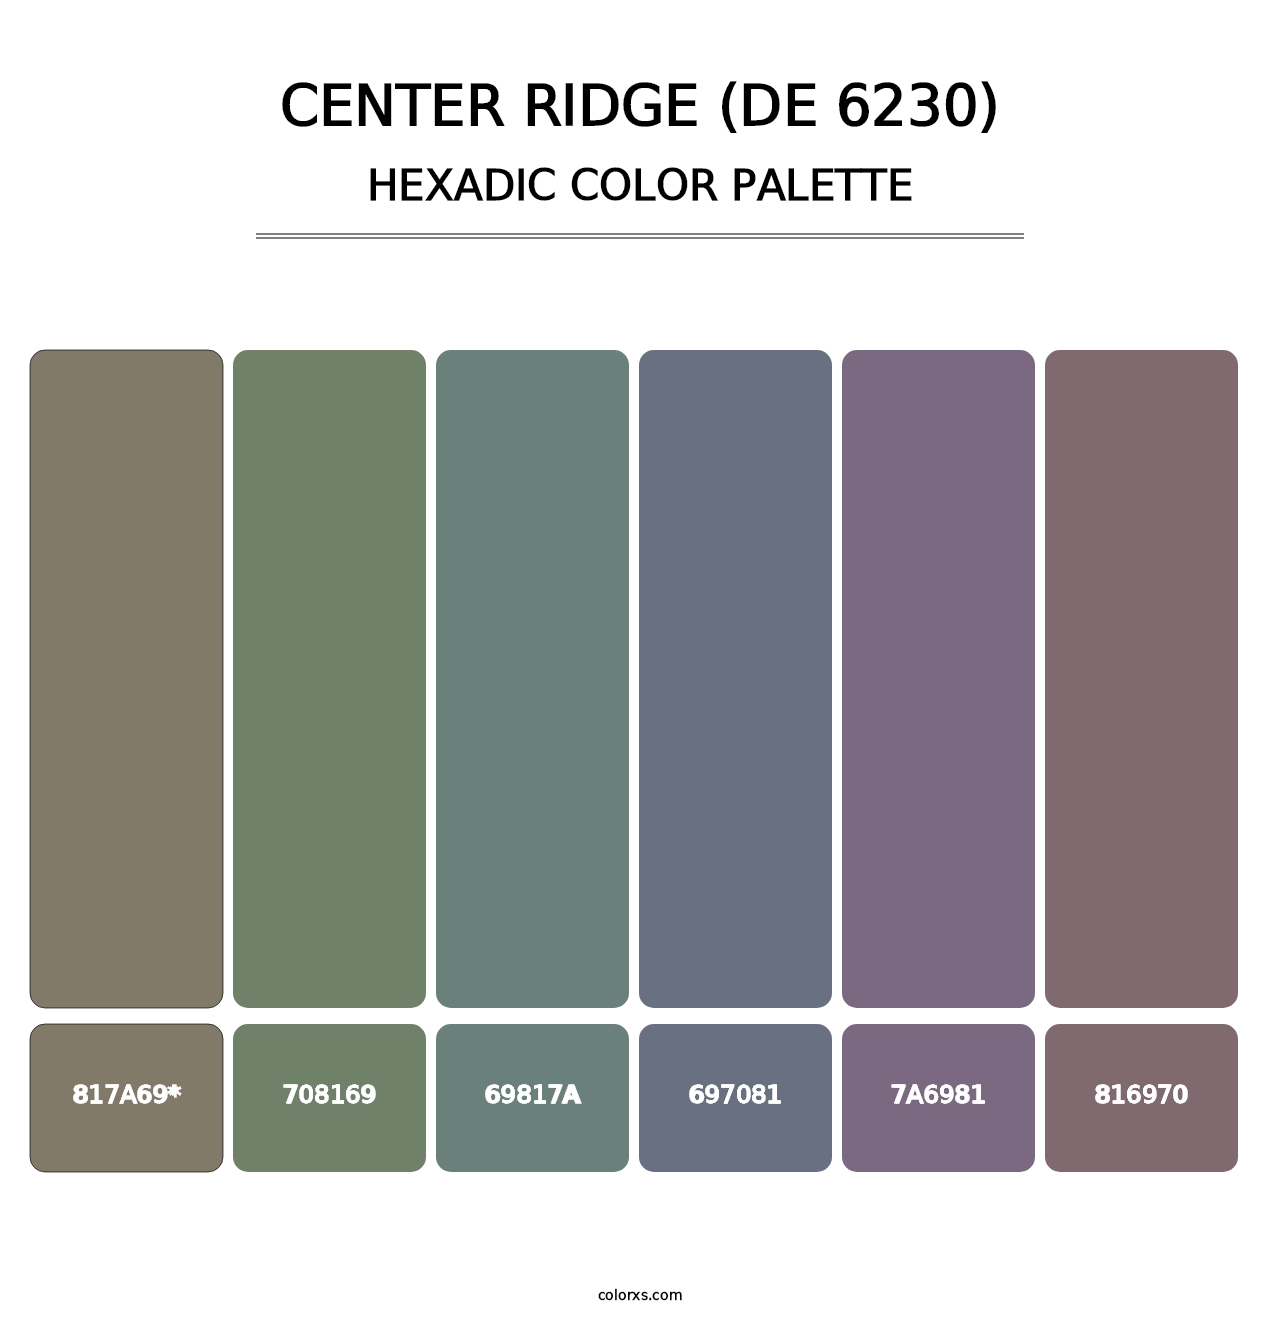 Center Ridge (DE 6230) - Hexadic Color Palette